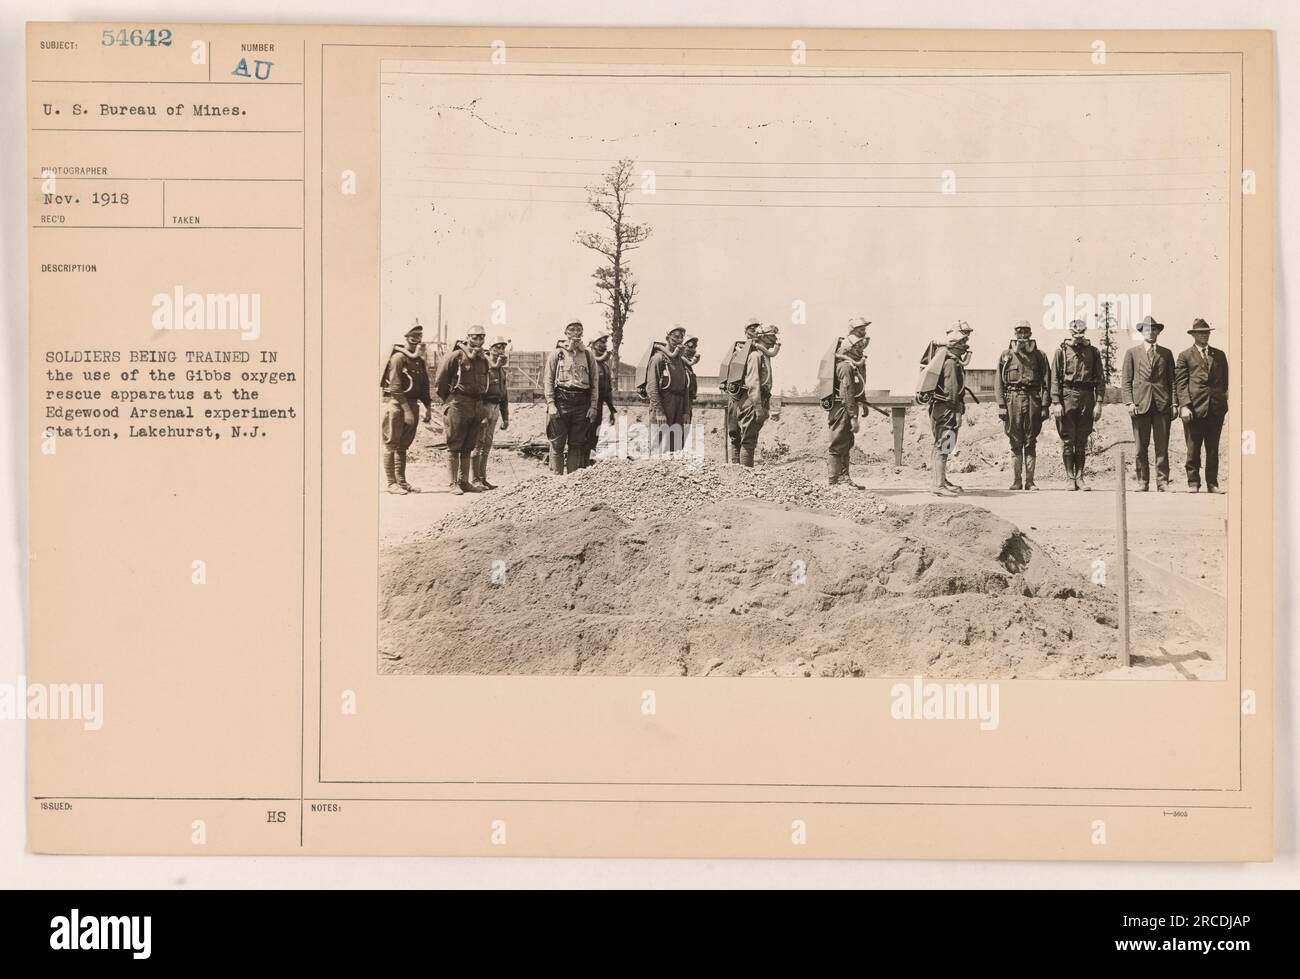 Soldats américains en formation avec l'appareil de sauvetage à oxygène Gibbs à la station expérimentale Edgewood Arsenal à Lakehurst, New Jersey. La formation a eu lieu en novembre 1918. Cette photographie a été prise par un photographe pour les États-Unis Bureau des mines. Banque D'Images